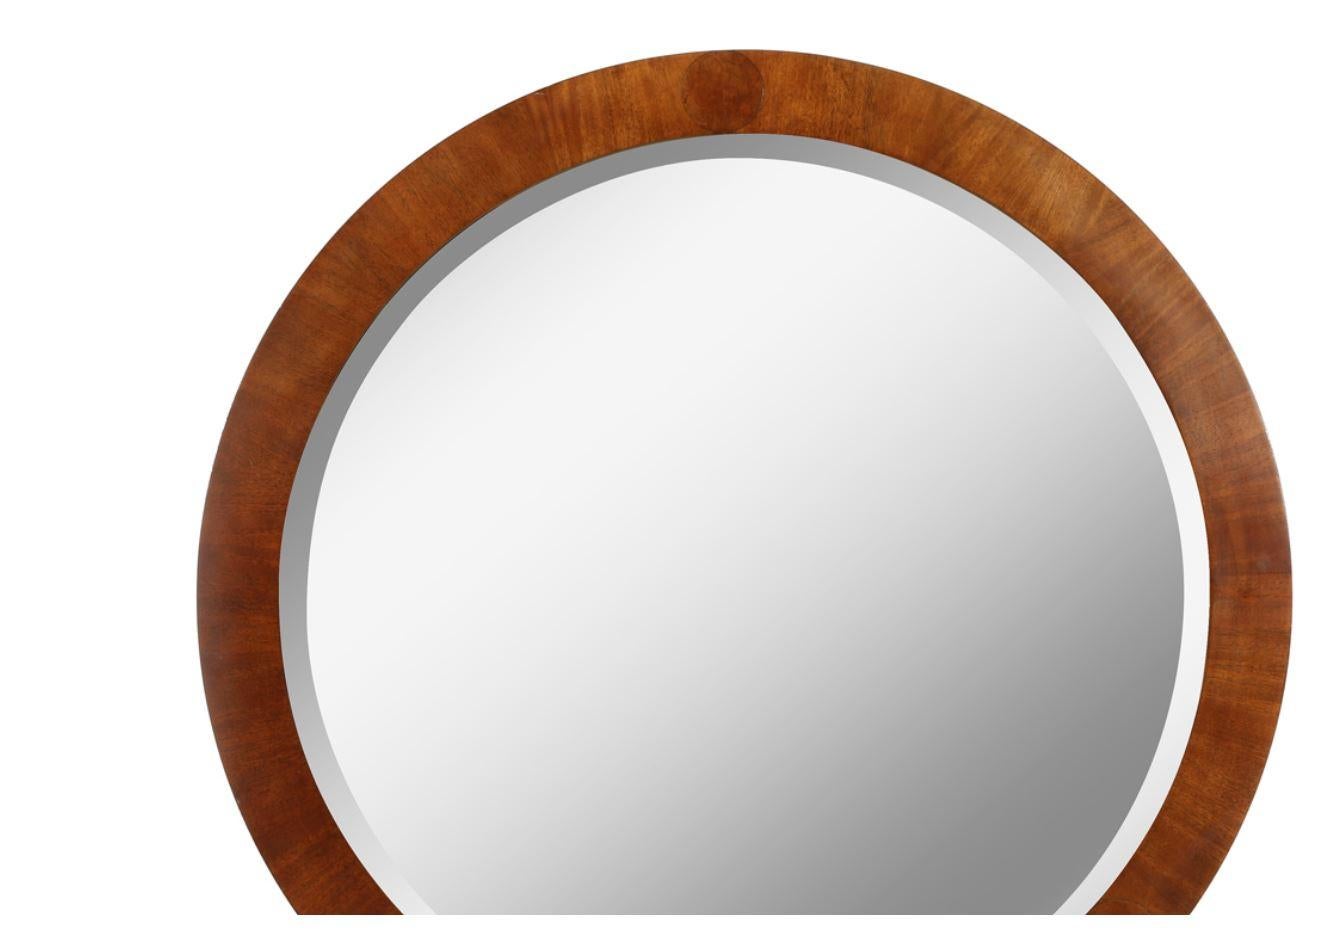 Mid-Century Modern vintage, round, Baker wood frame mirror.